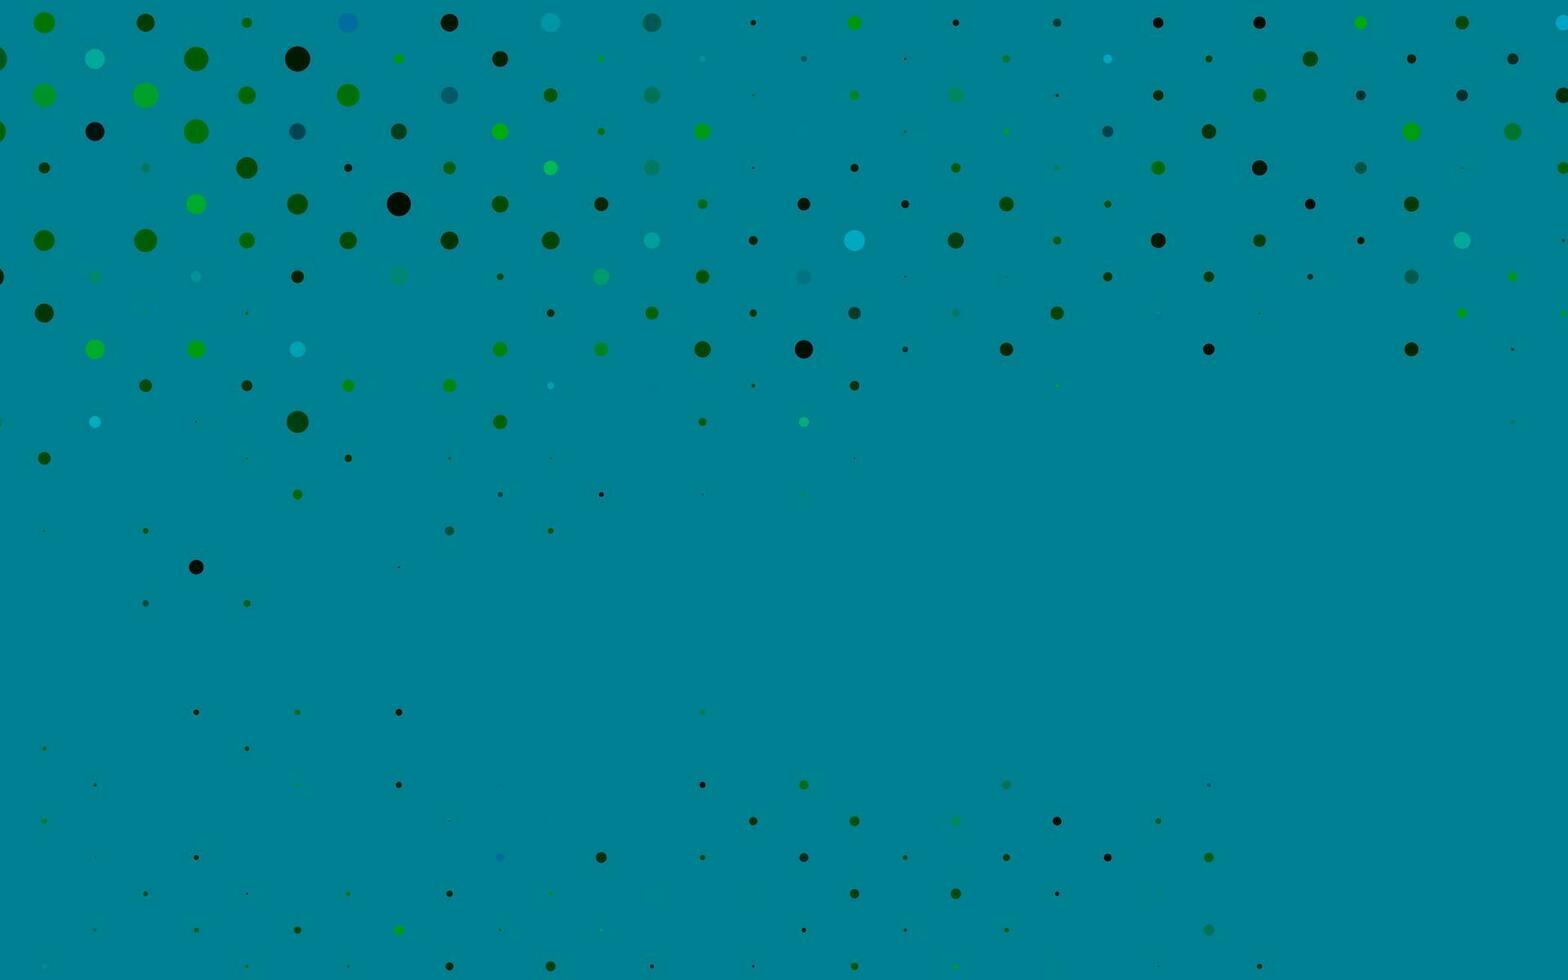 modelo de vetor azul e verde claro com círculos.